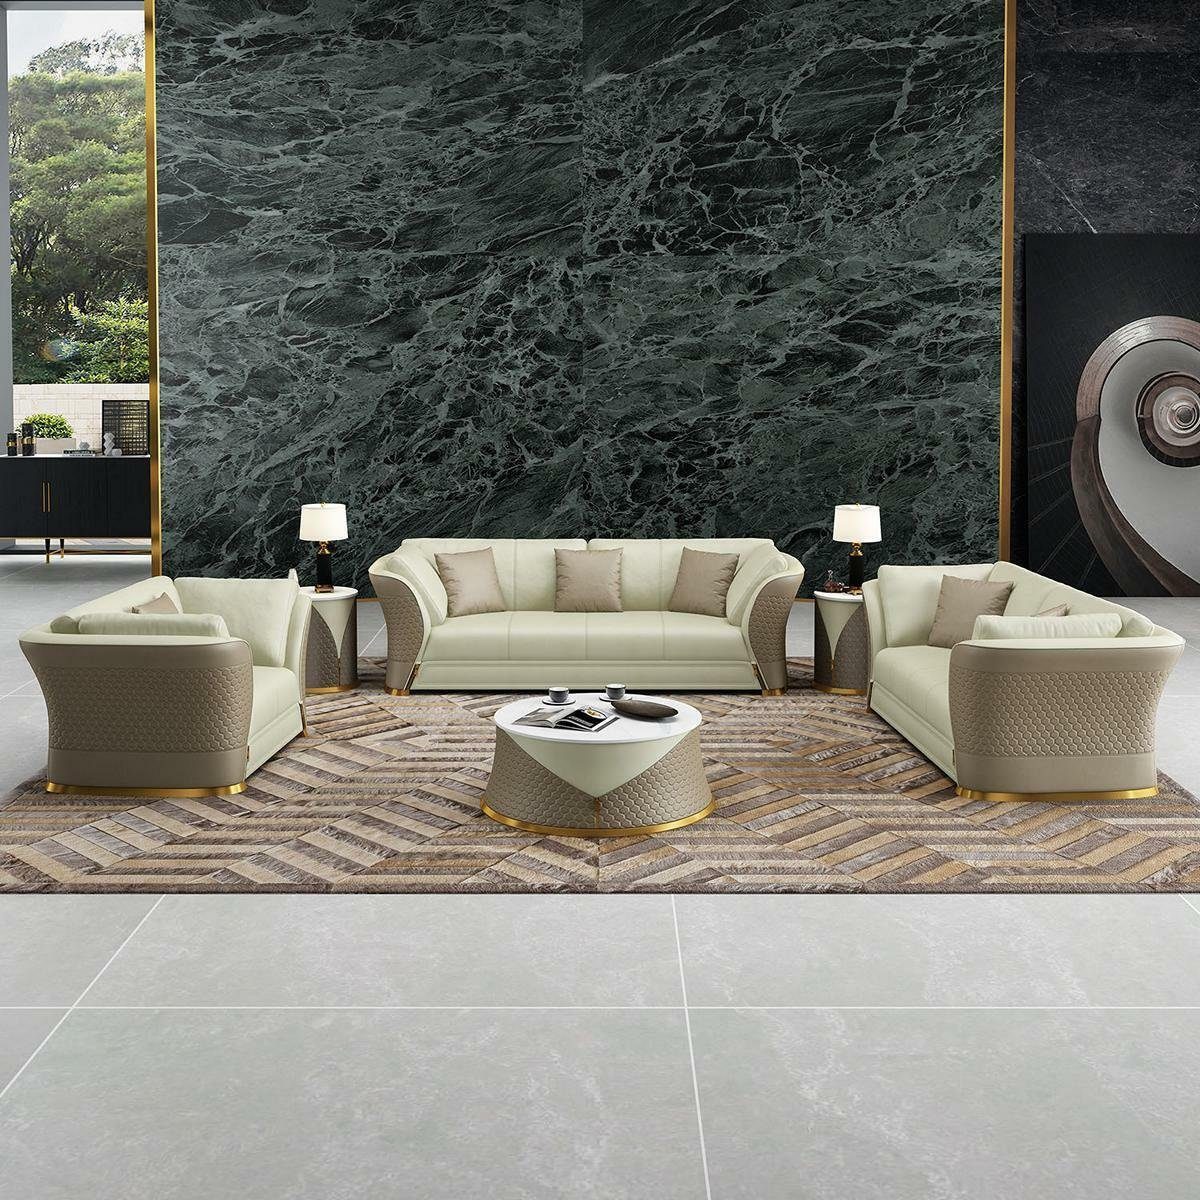 Luxus Neu, in 3+2+1 Leder Sitzgarnitur JVmoebel Europe Made Weiß/Beige Sitzer Polstermöbel Sofa